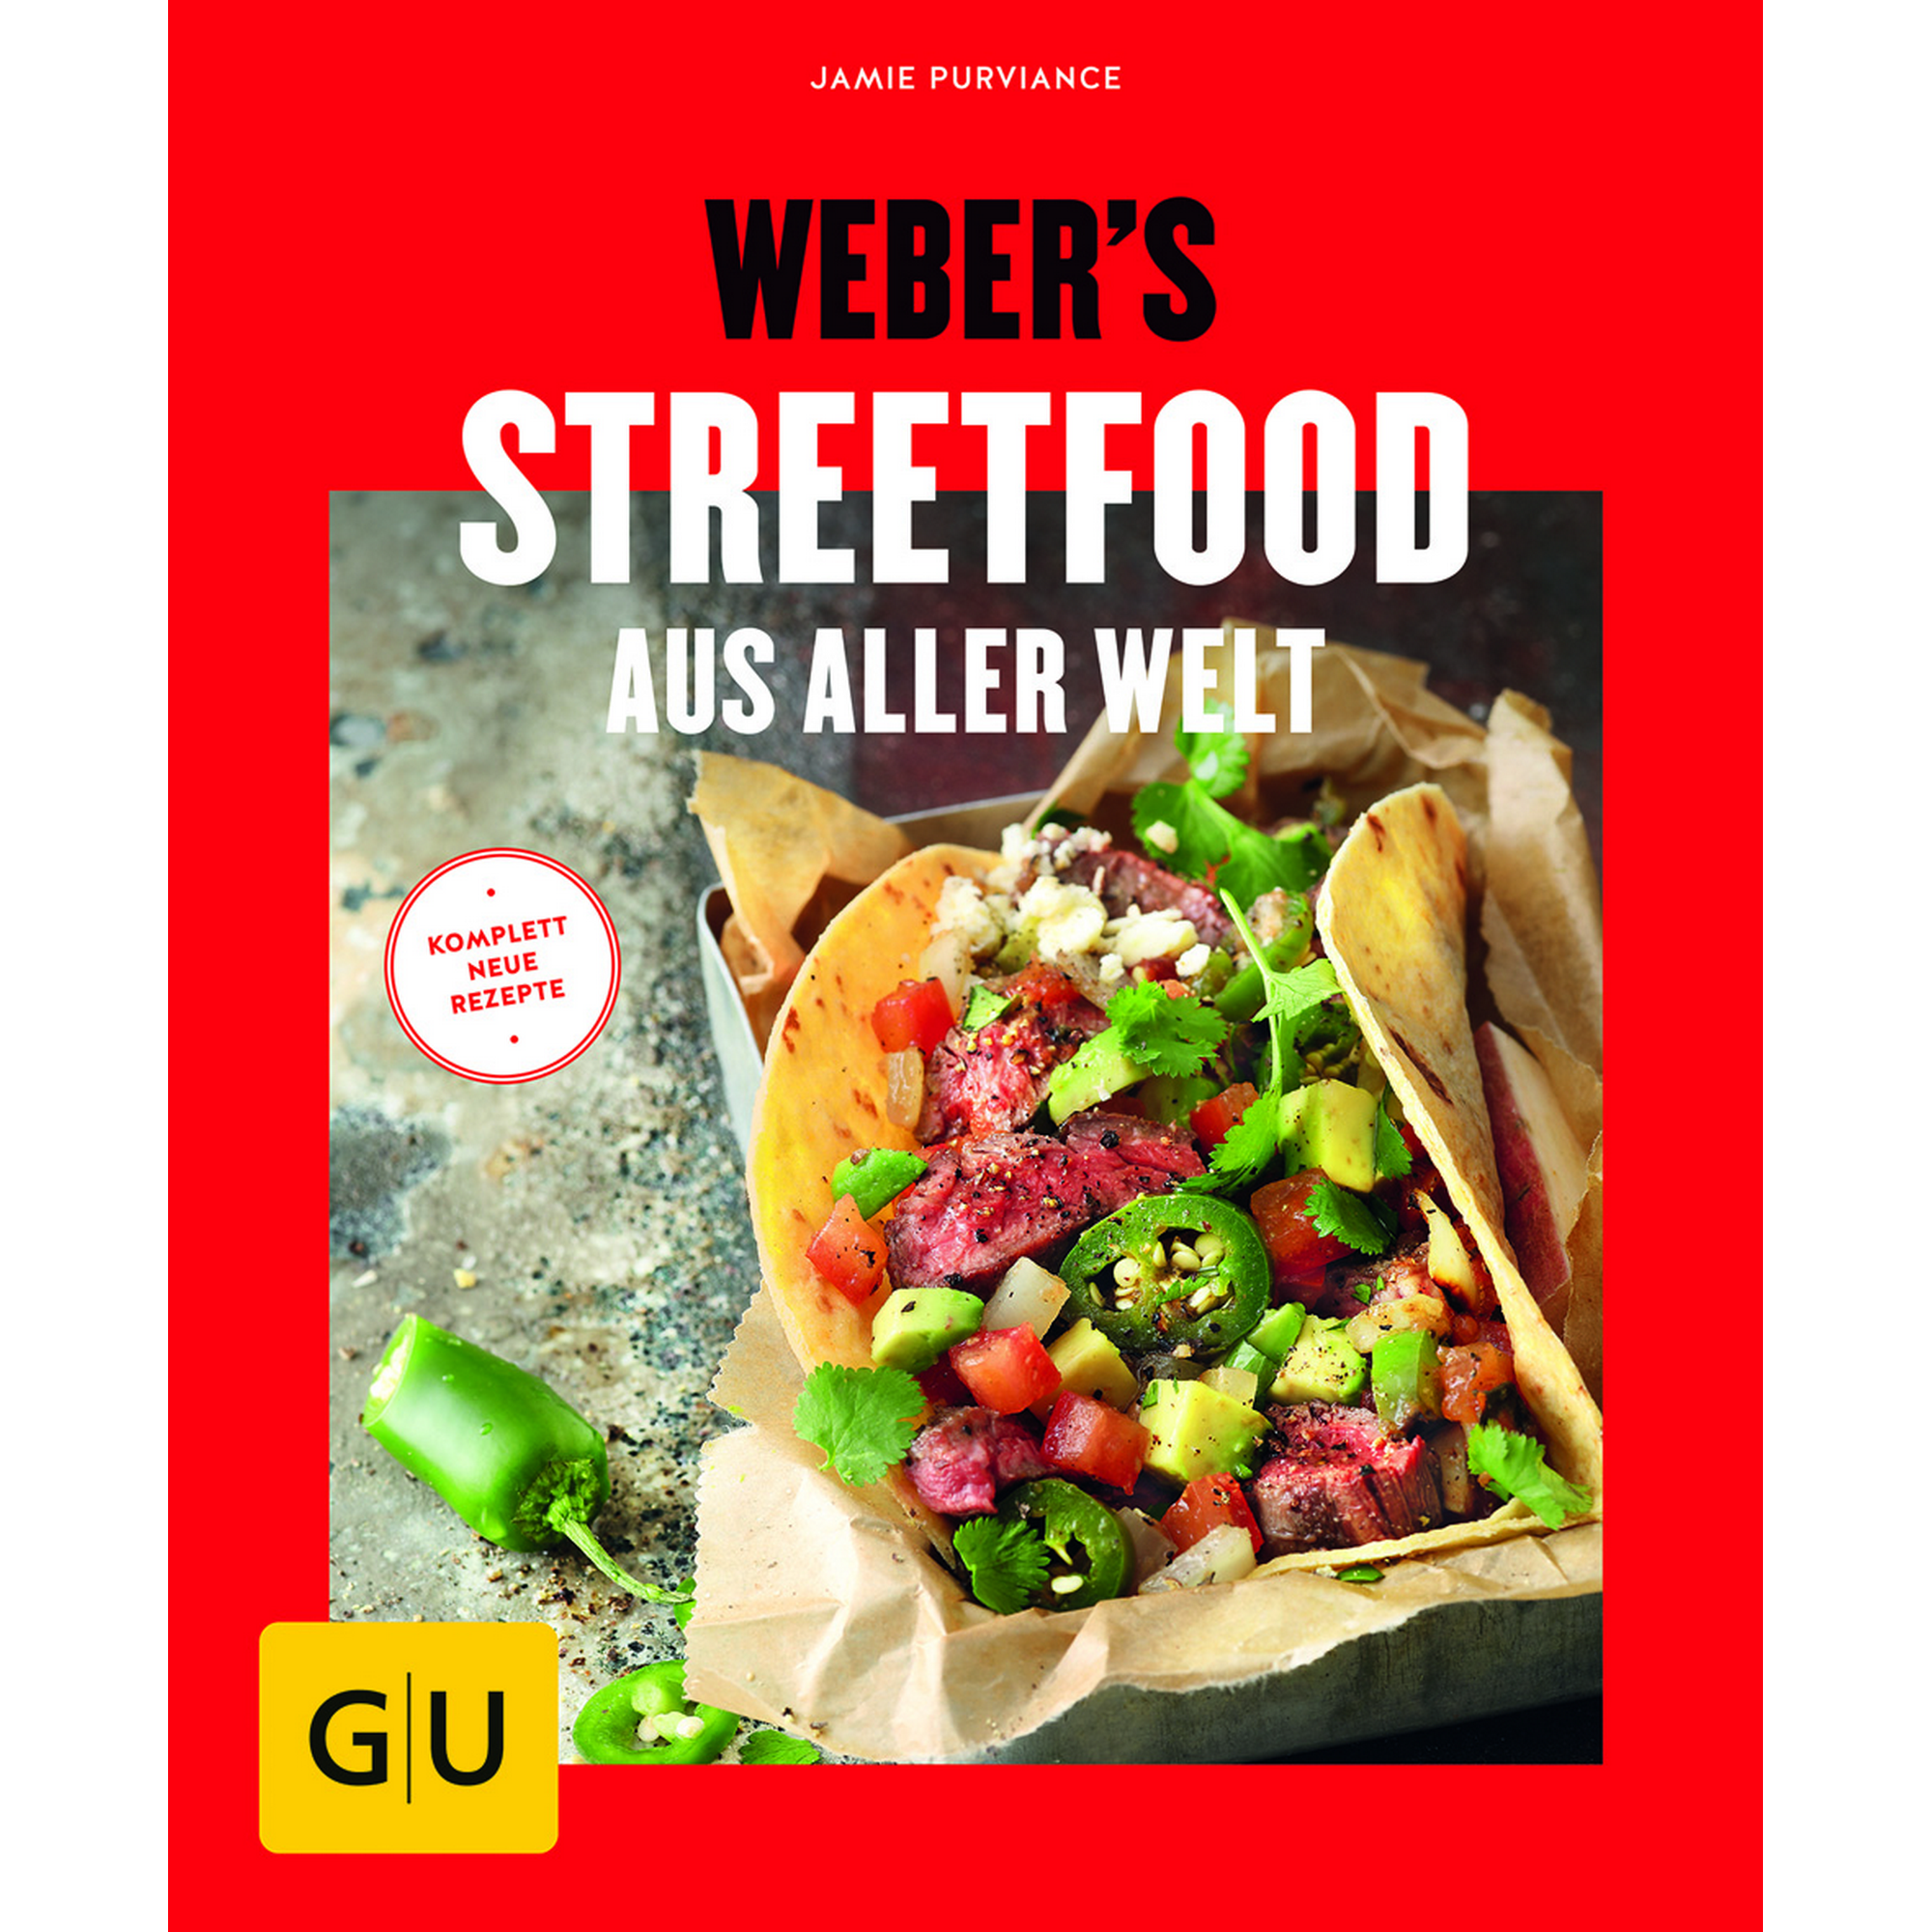 Grillbuch Jamie Purviance 'Weber's Streetfood aus aller Welt ' + product picture